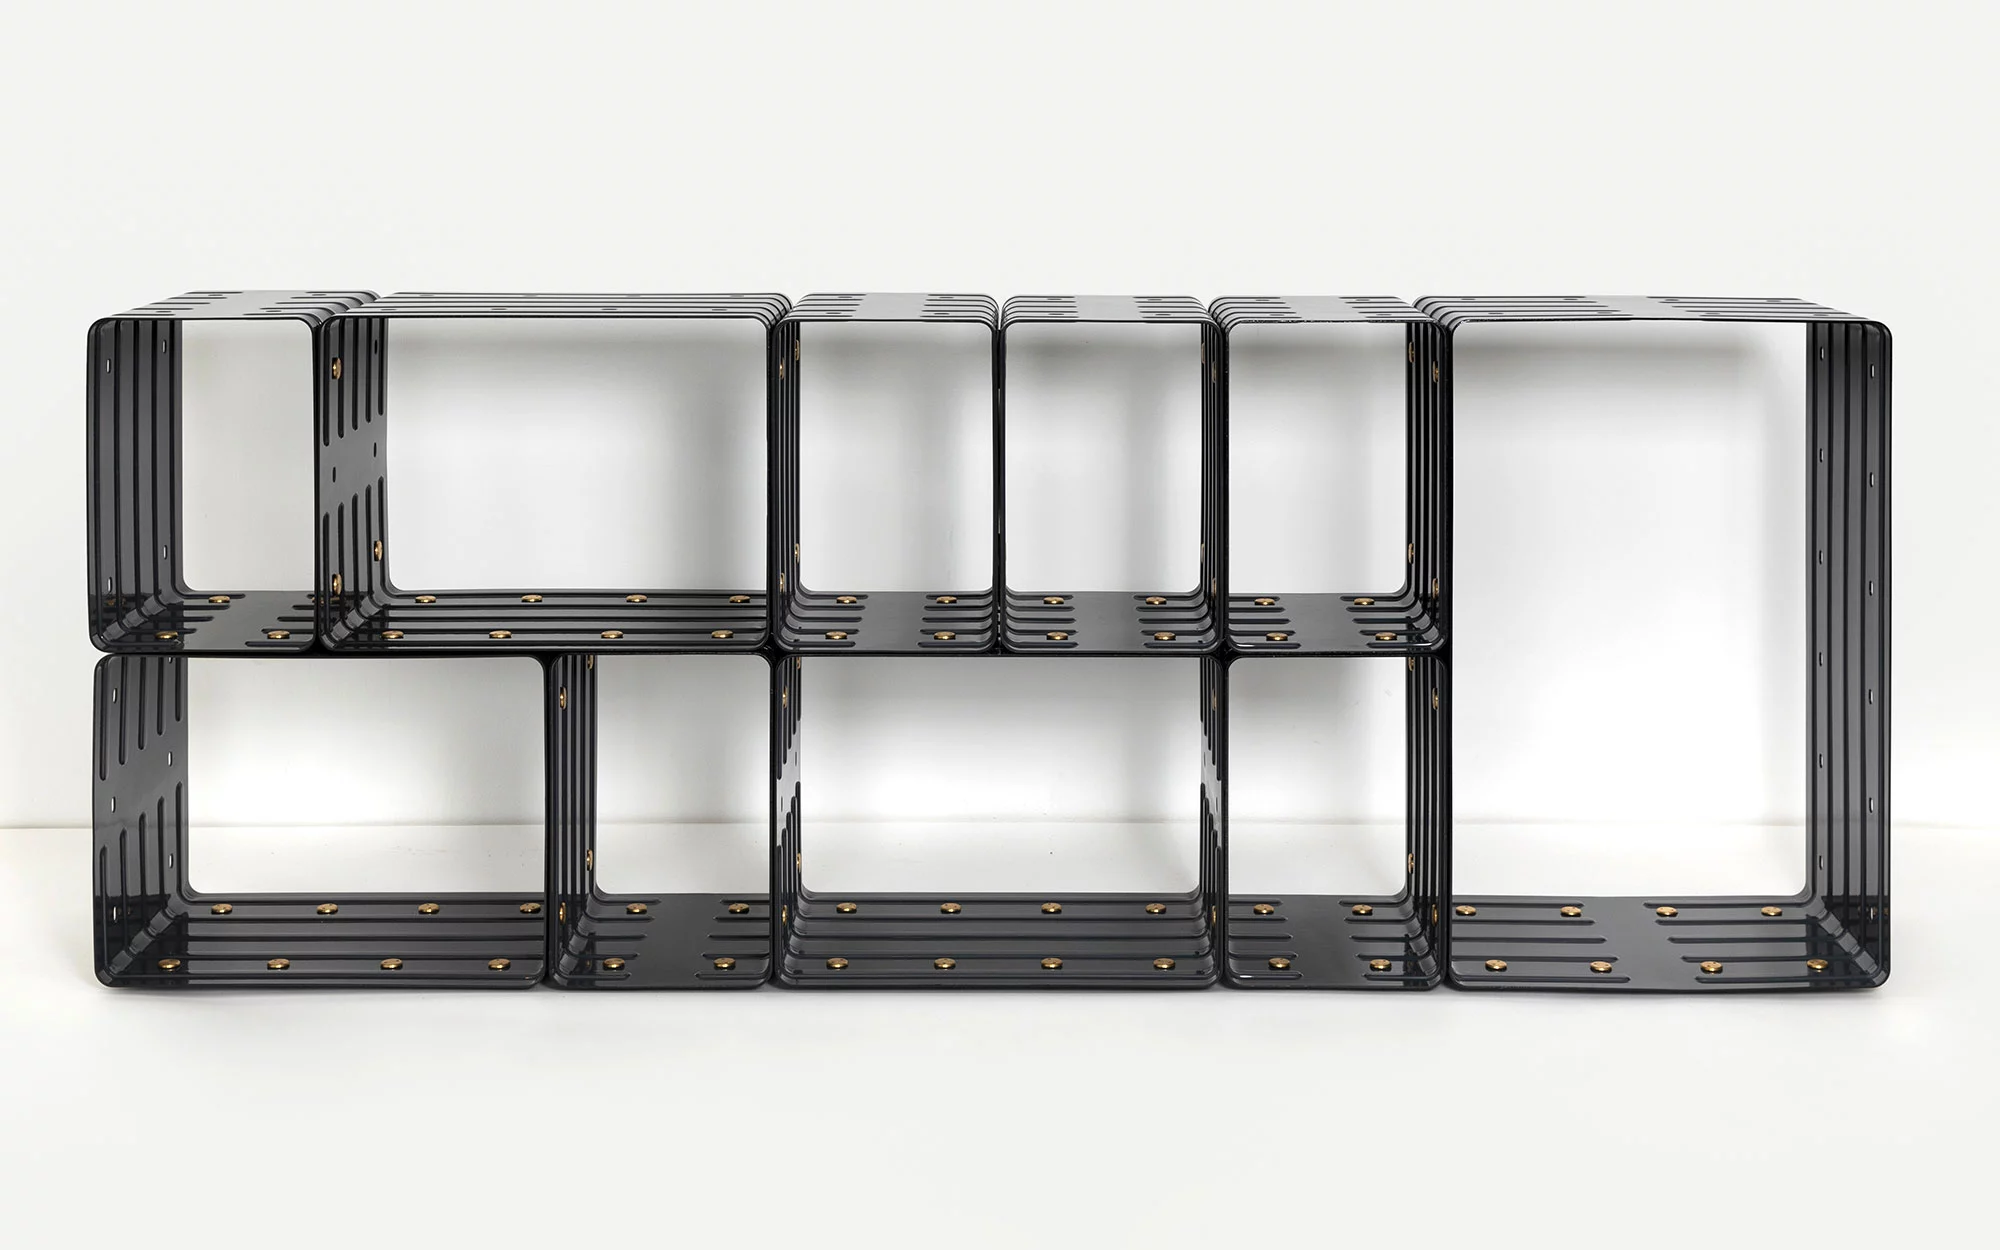 Quobus 1,3,6 monochromatic - Marc Newson - bookshelf storage- Galerie kreo